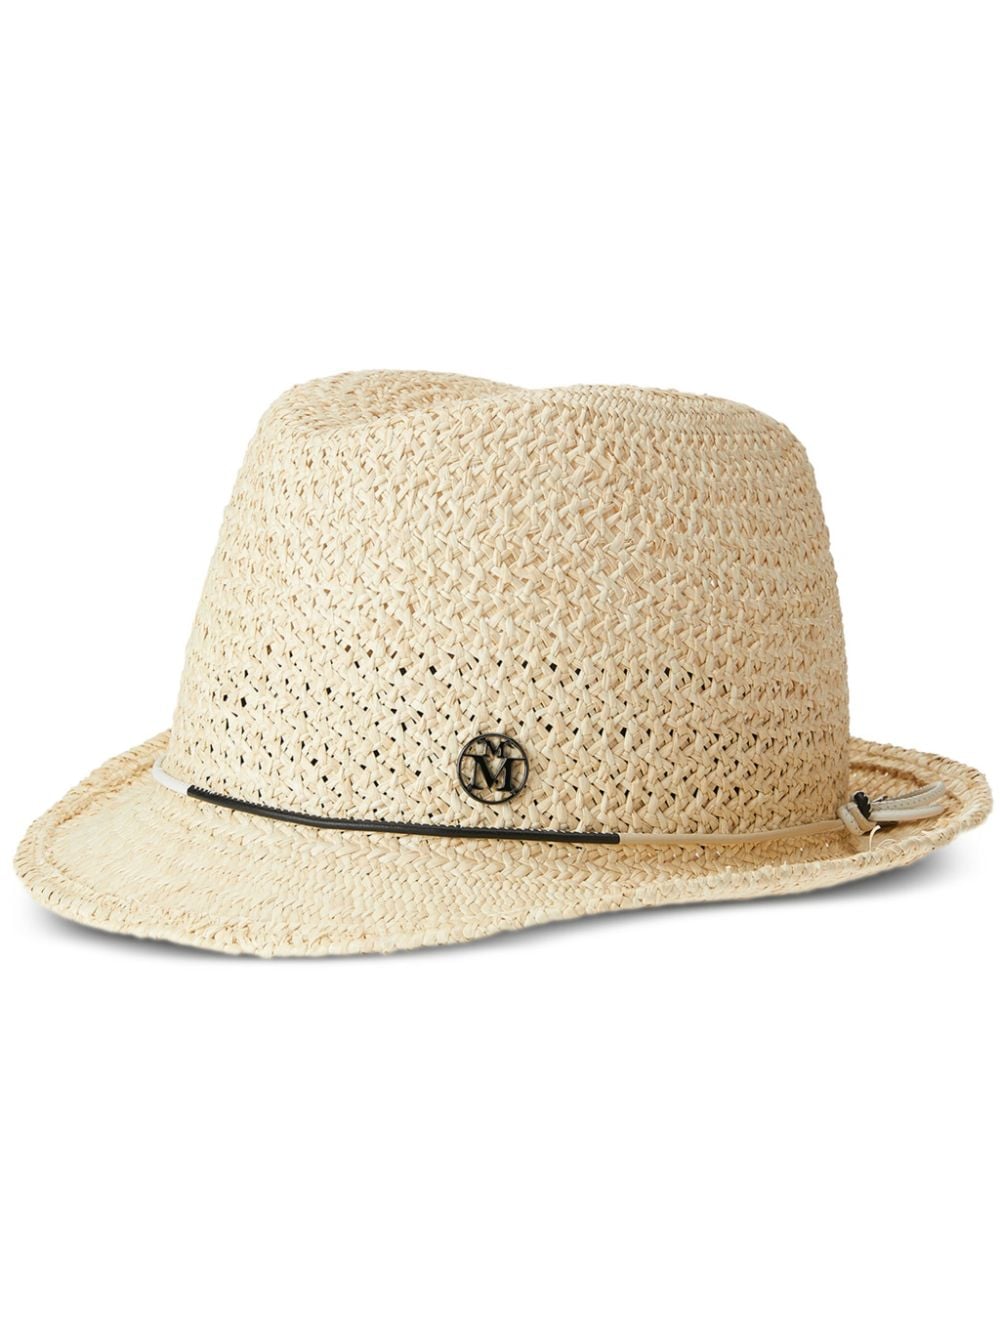 Maison Michel Karen Straw Trilby Hat In Neutrals